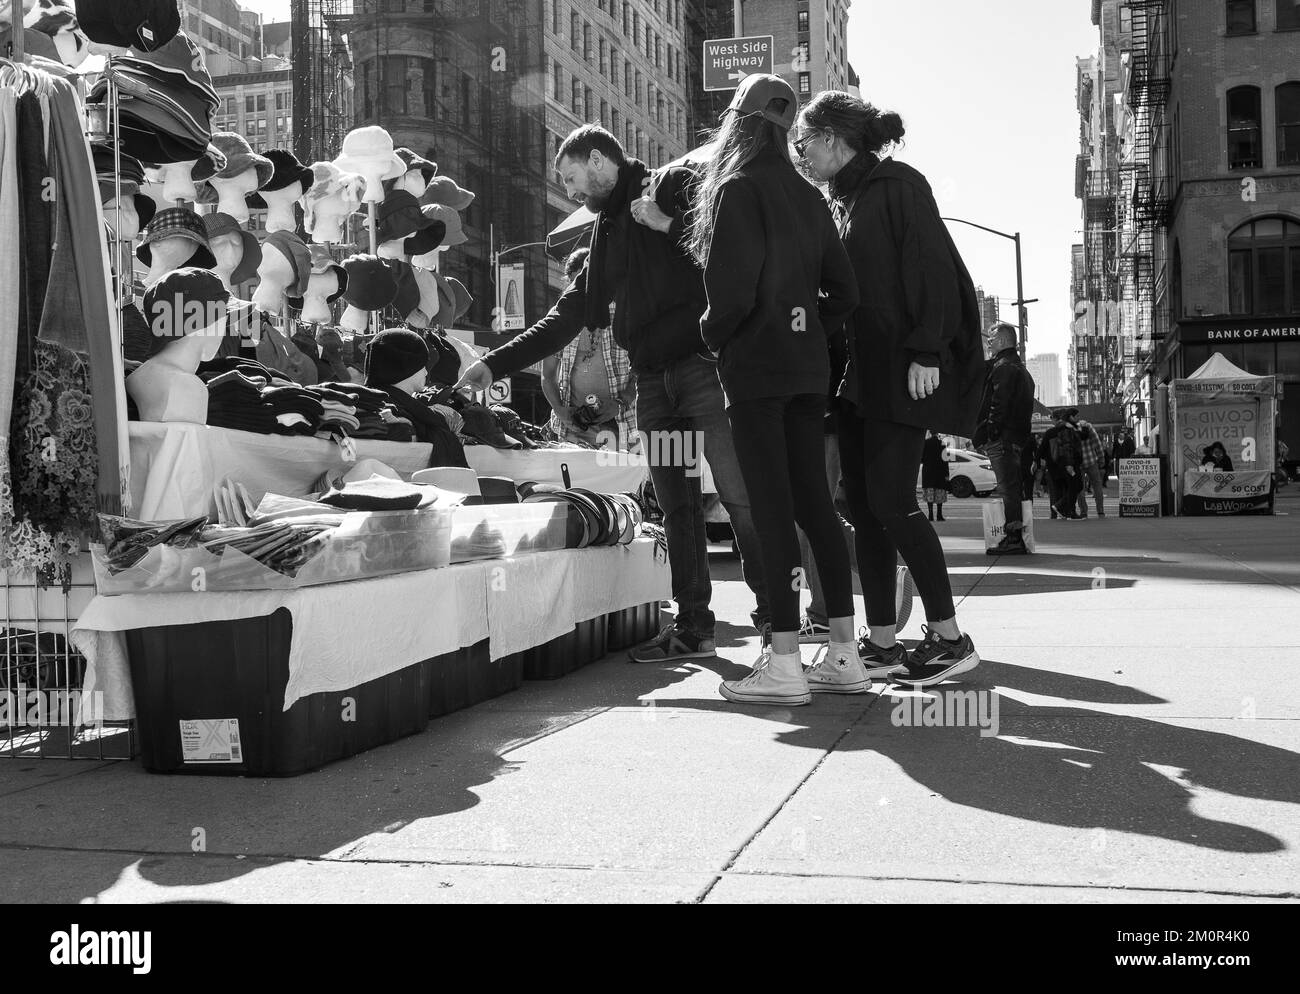 Eine Gruppe junger Leute, die Kappen und Hüte von Straßenverkäufern auf dem Bürgersteig in Manhattan, New York City, kaufen. Schwarz-weiße Straßenfotografie. Stockfoto